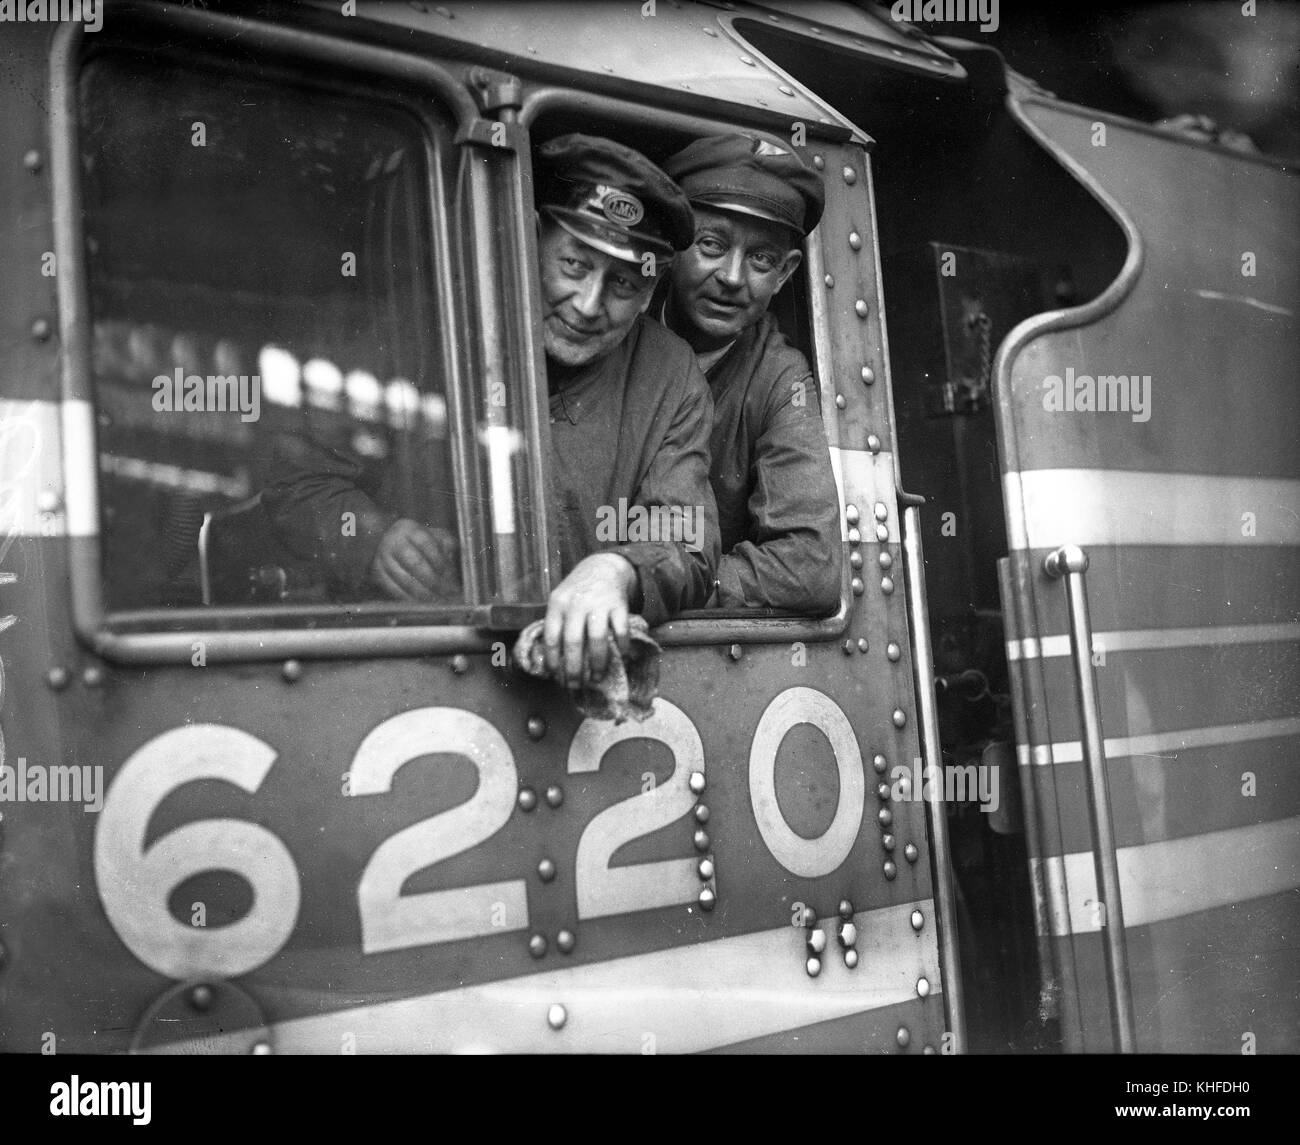 Rekordverdächtige Zugpersonal Treiber TJ. Clarke und Feuerwehrmann C. Lewis auf die Fußplatte der LMS Dampflok Prinzessin Krönung Klasse Nr. 6220 nach der Einstellung eines neuen Geschwindigkeitsrekord von 114 mph am 29. Juni 1937 Stockfoto